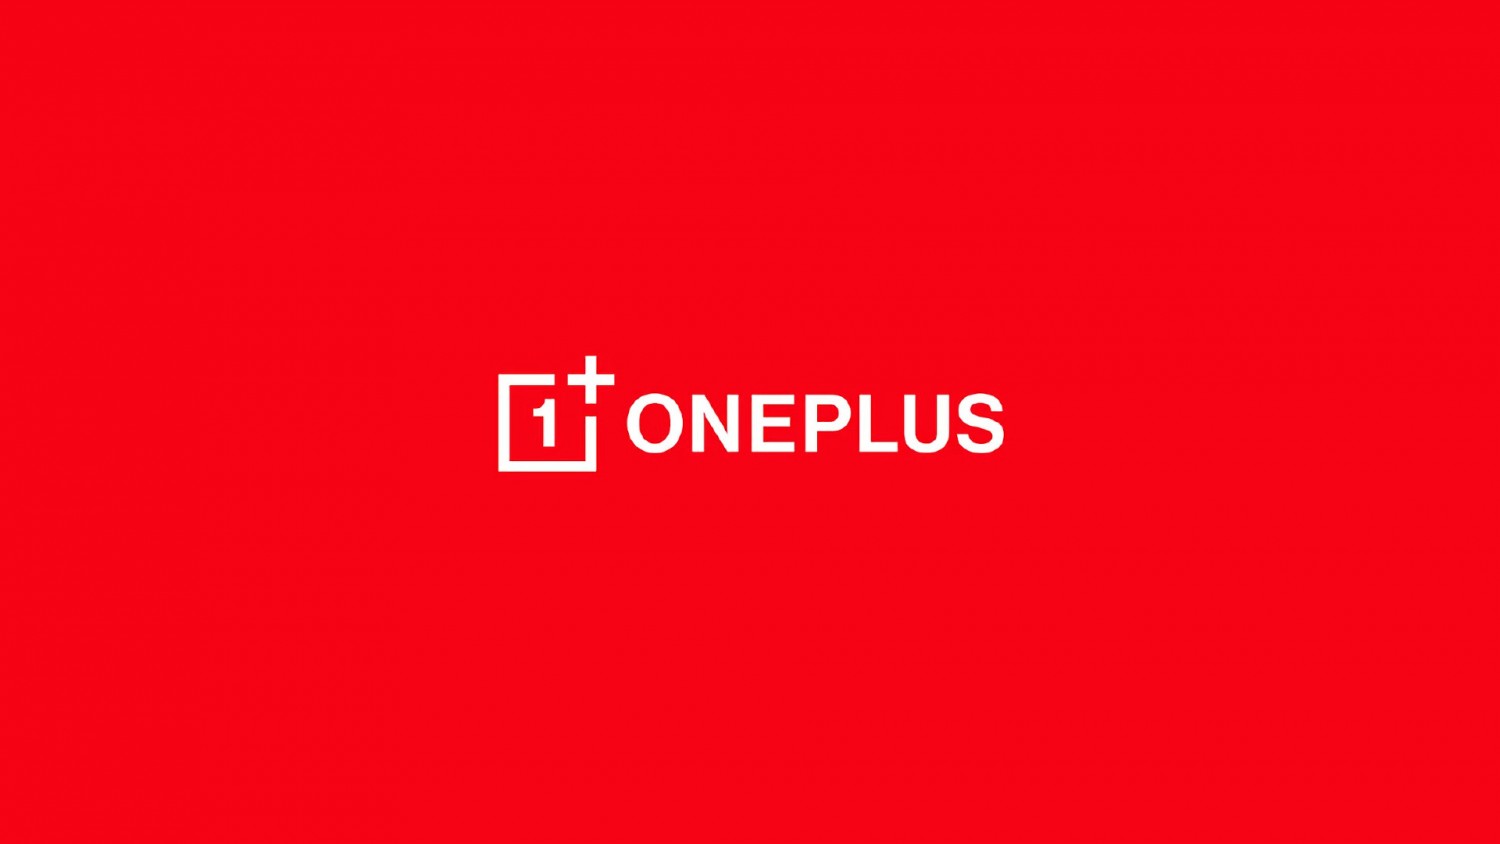 OnePlus представила новые логотип и визуальный стиль